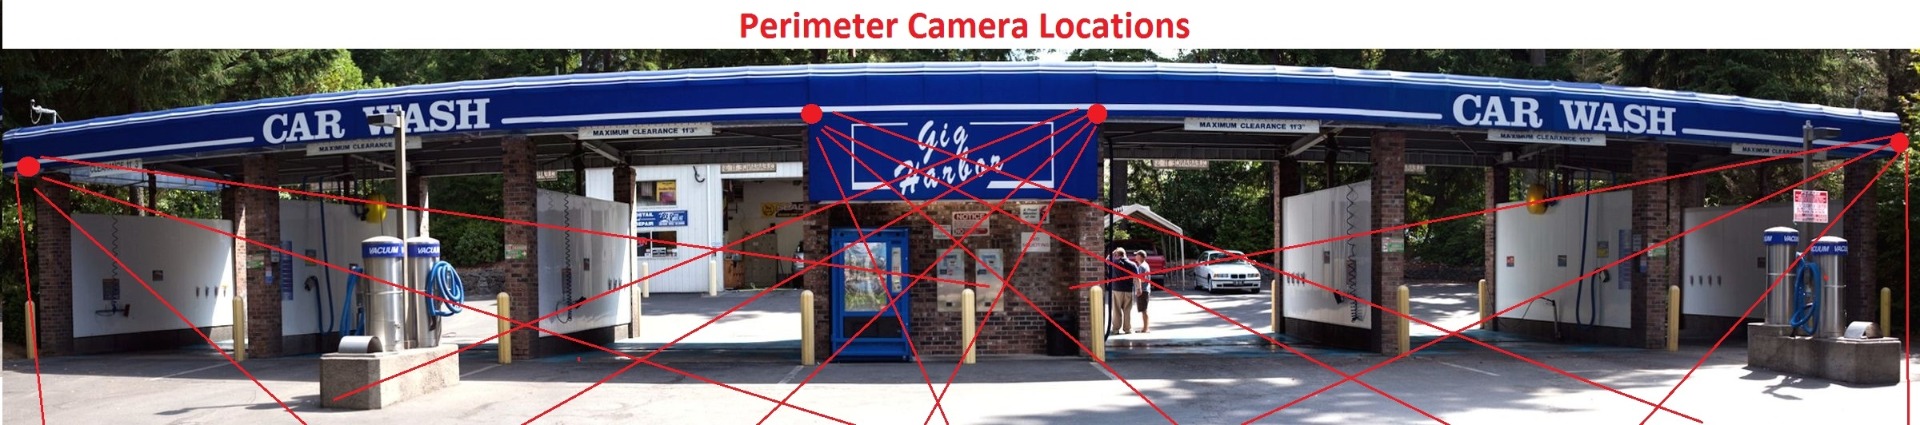 https://www.backstreet-surveillance.com/media/Categories/perimeter_camera_locations.jpg